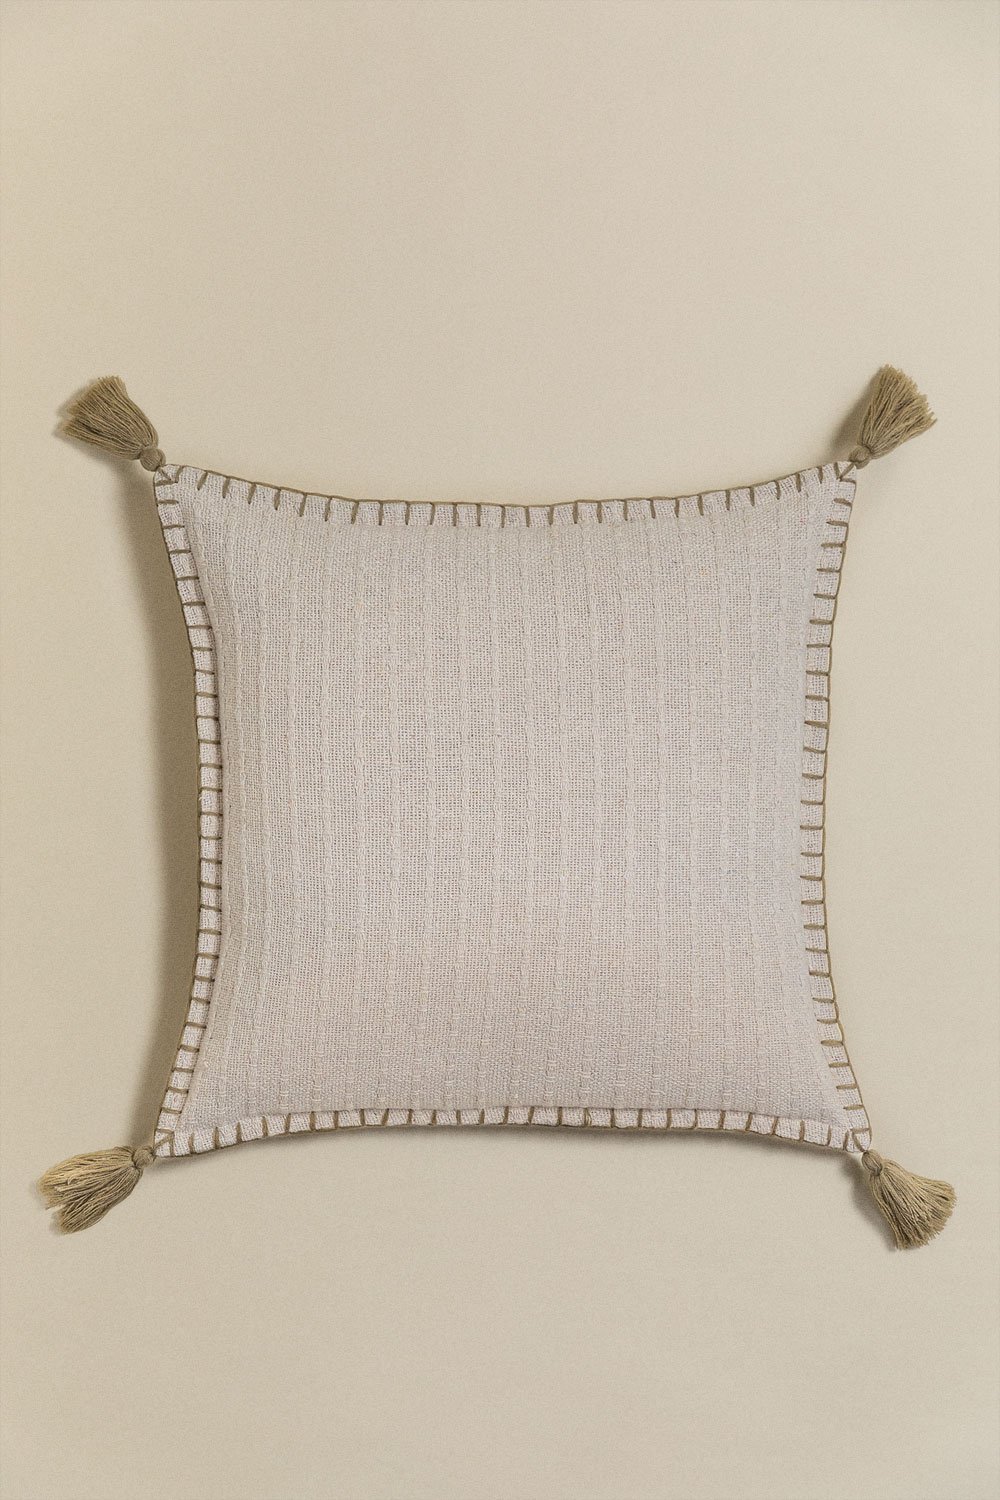 Kwadratowa poduszka z bawełny i lnu (45x45 cm) Gautier , obrazek w galerii 1